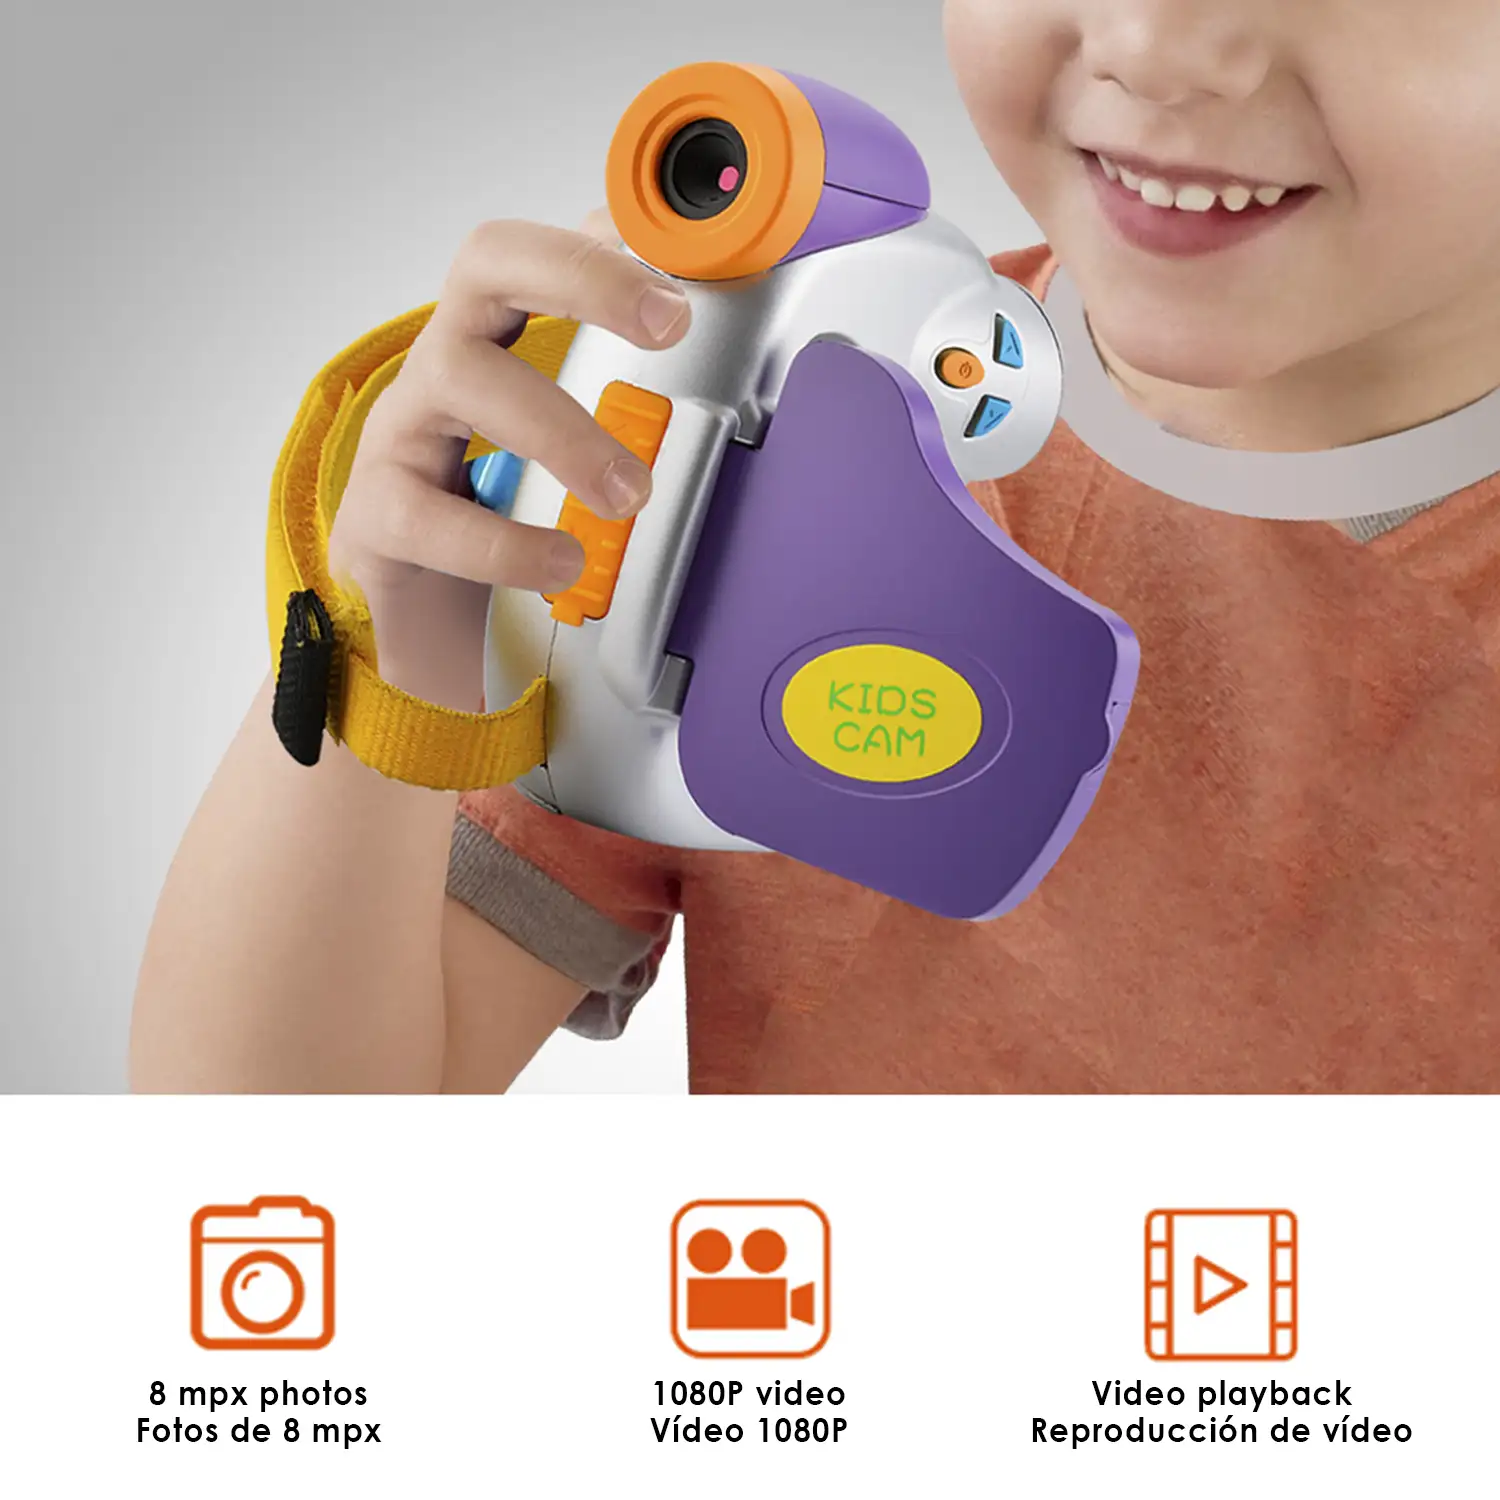 Cámara digital para niños de fotos y video. Resolución 8 mpx y HD 1080. Pantalla plegable, con colgador.